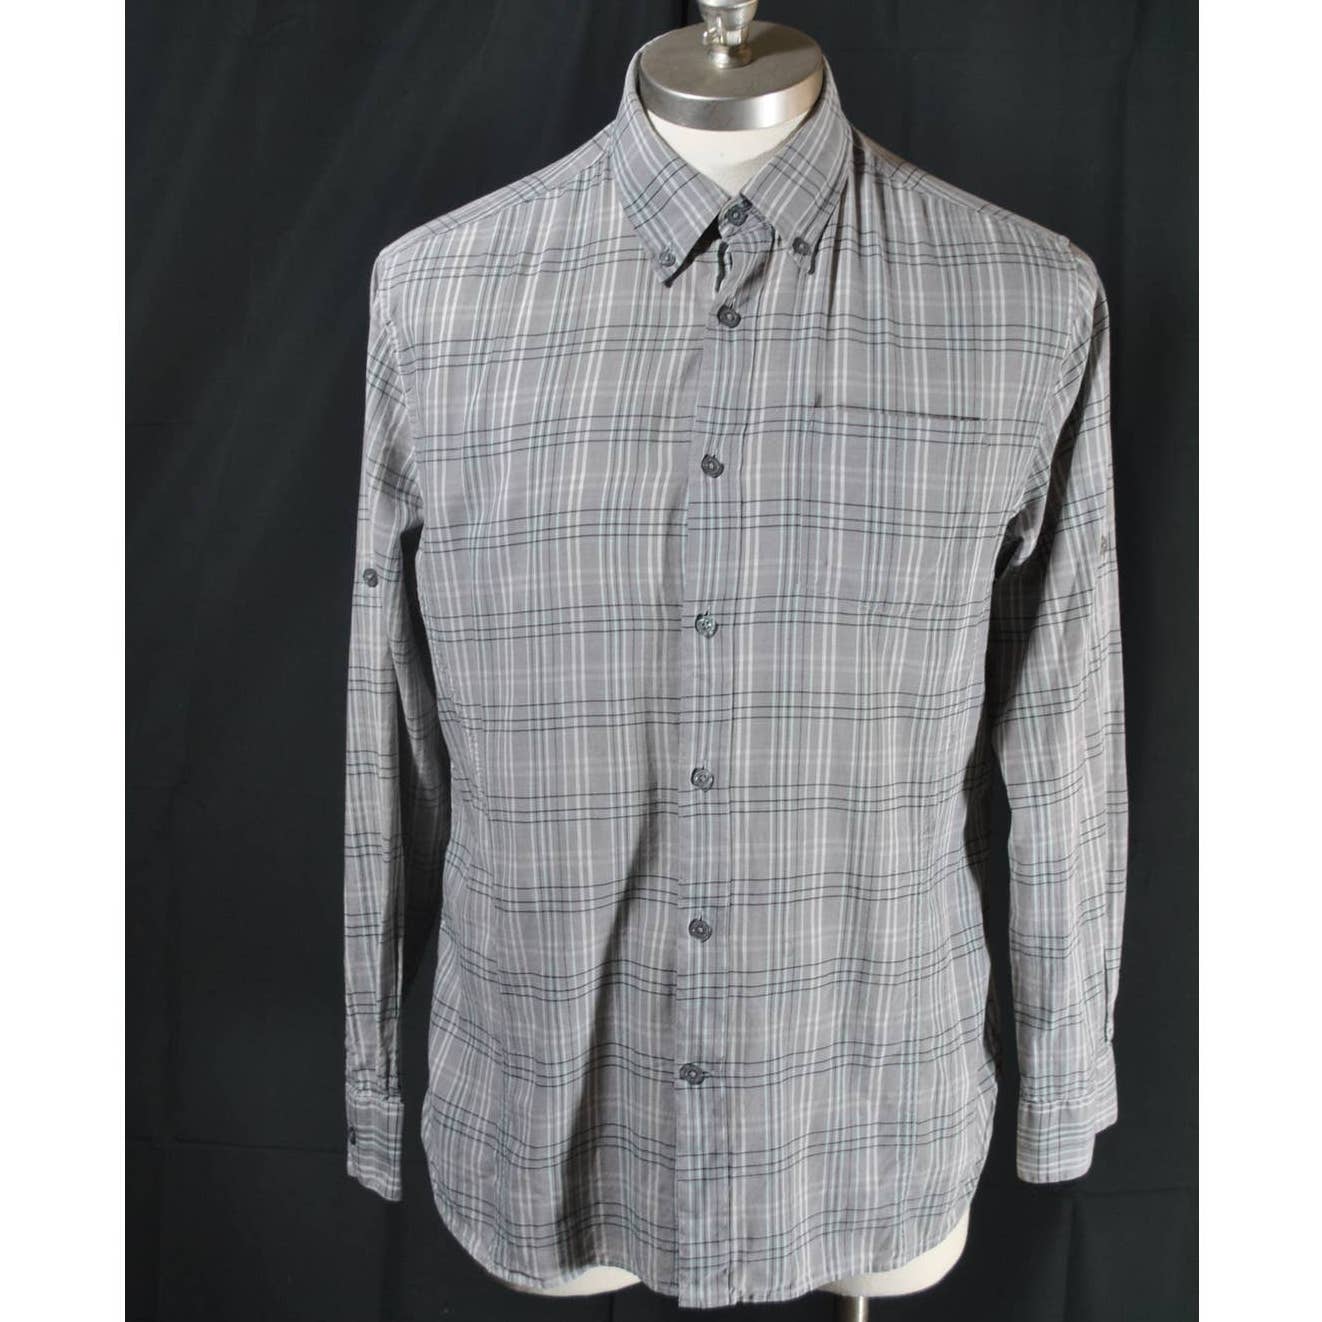 John Varvatos USA Grey and Blue Plaid Button Up Shirt- M